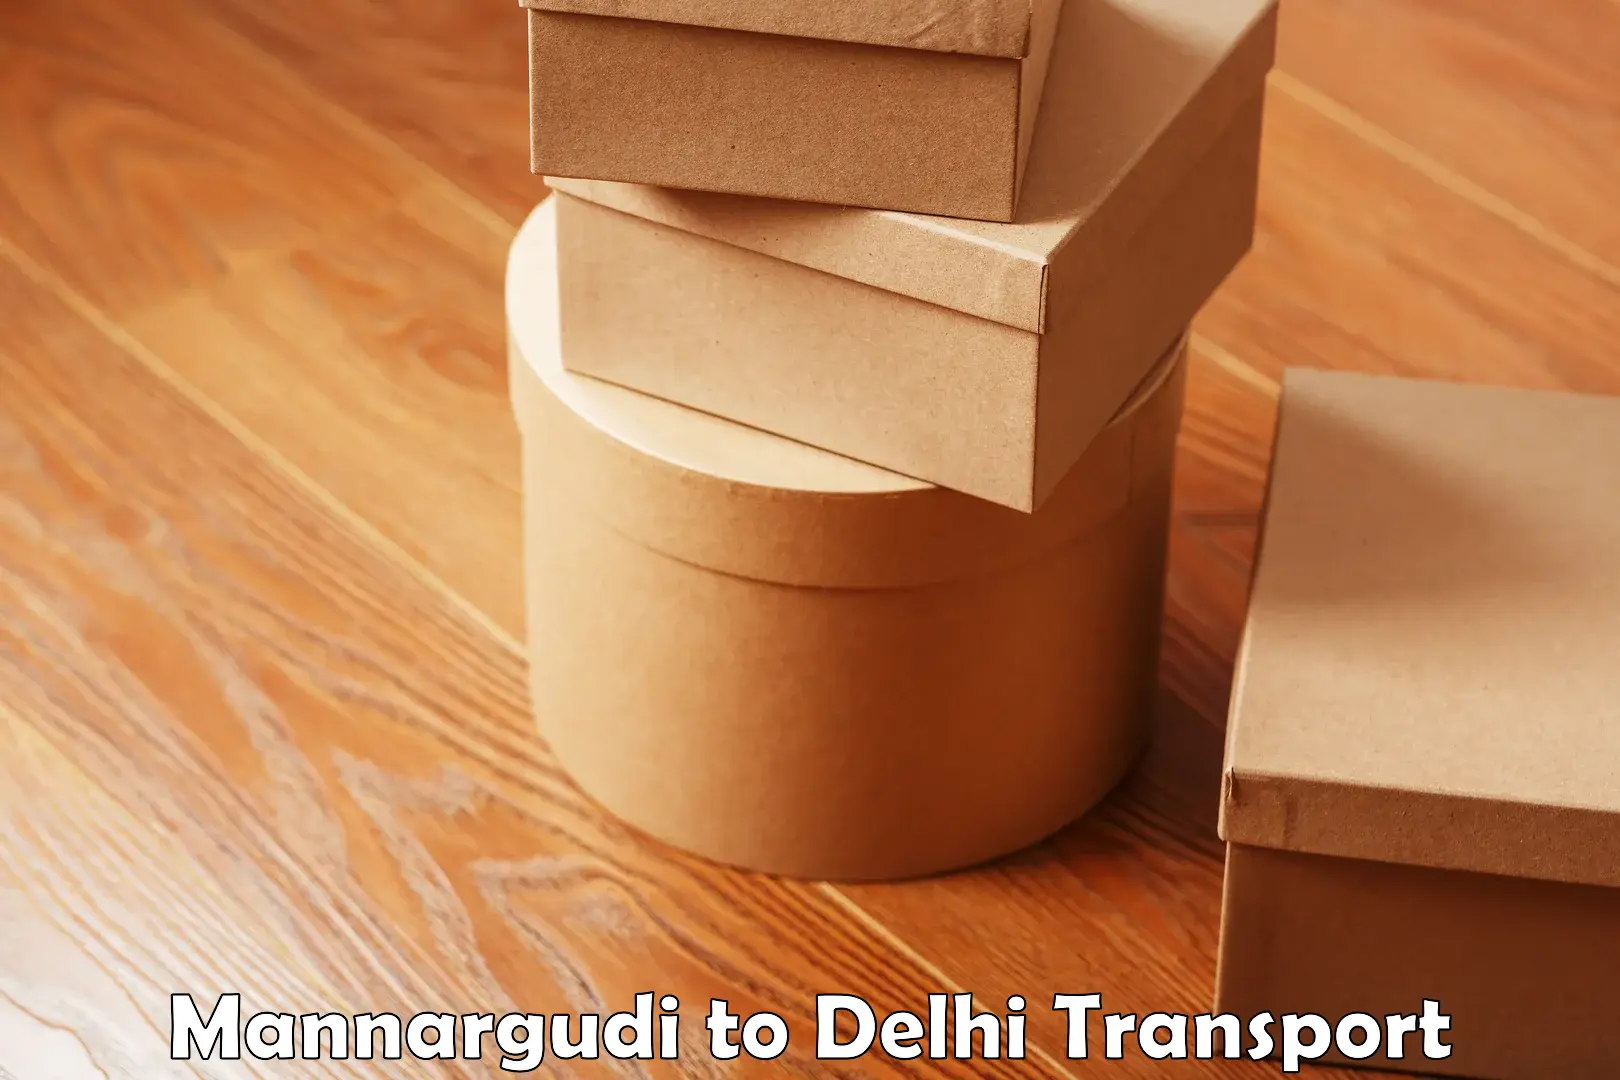 Online transport service Mannargudi to East Delhi